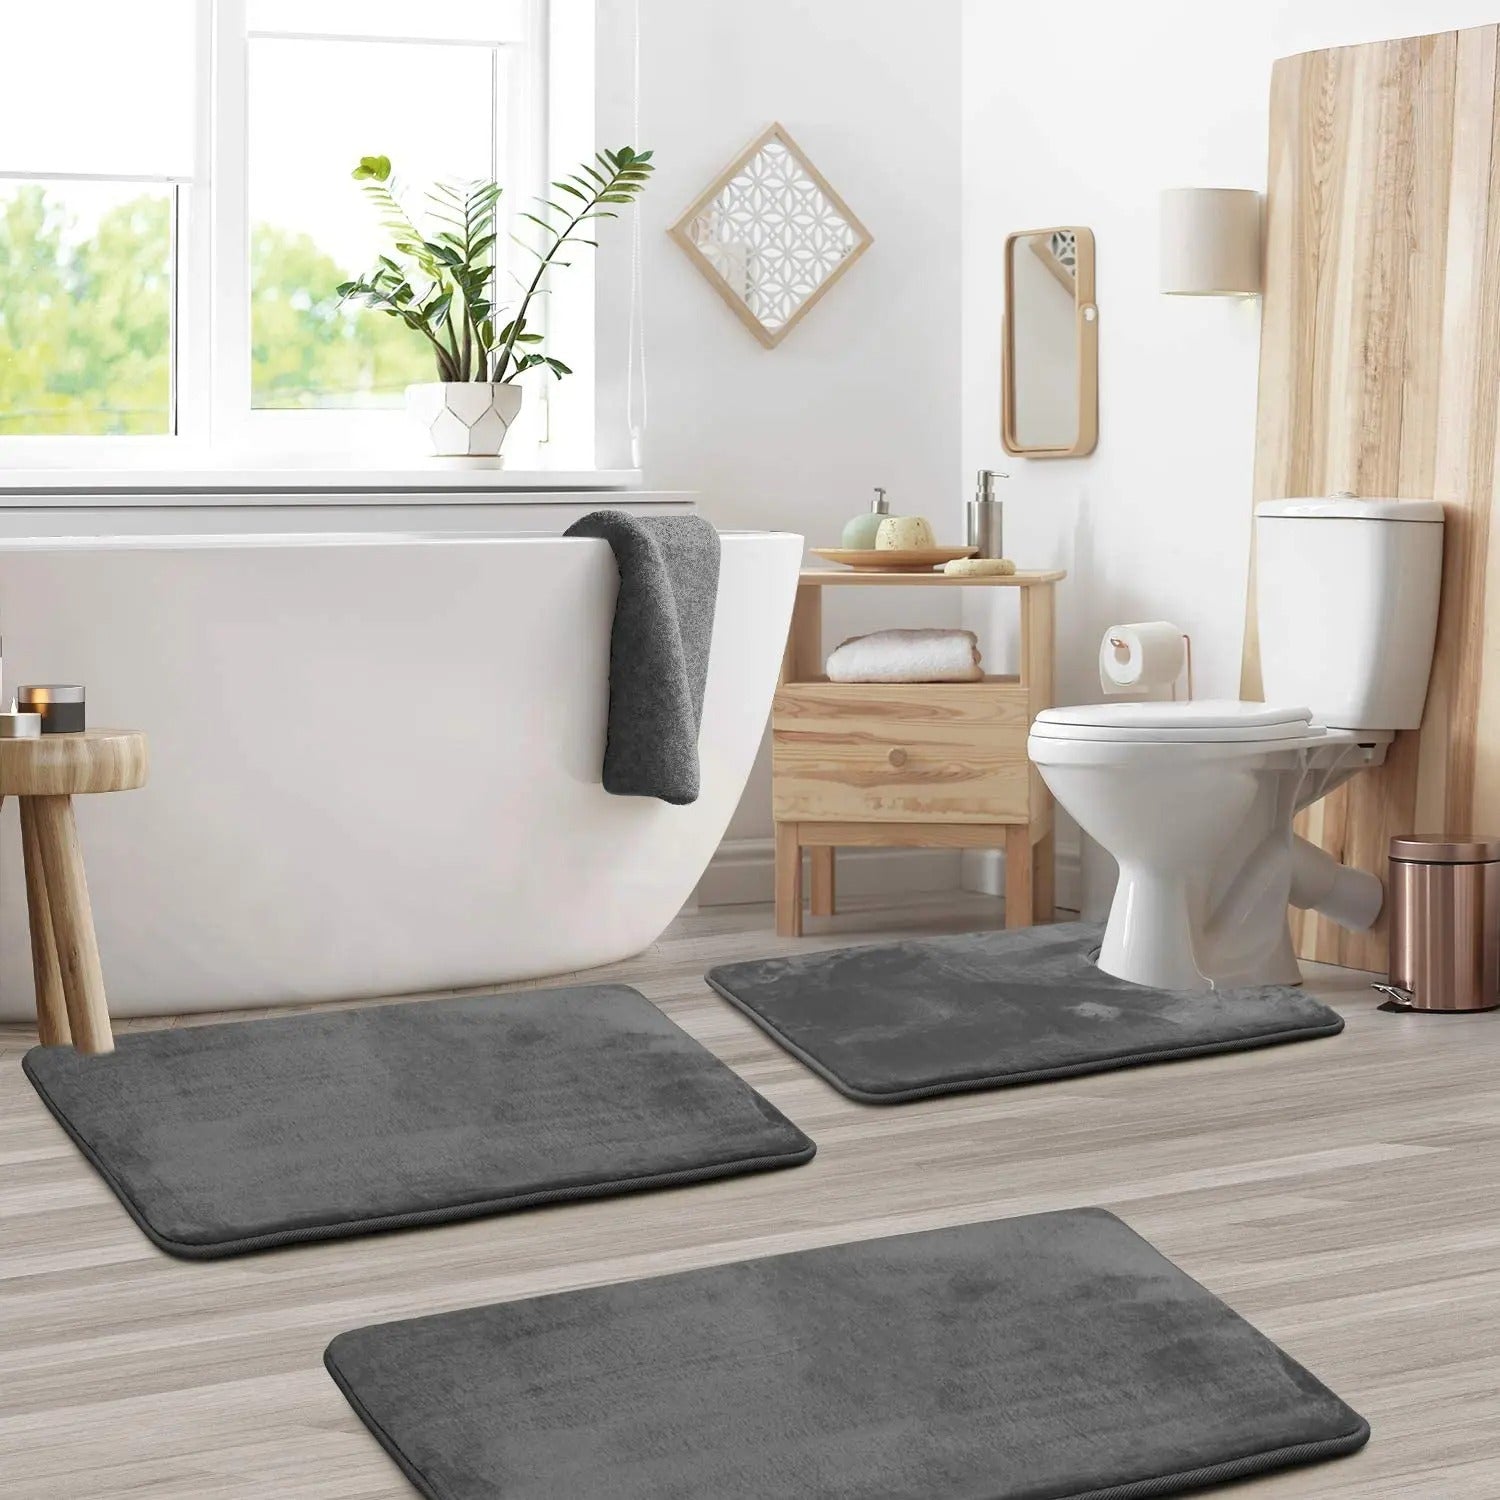 Efforest Luxurious and Ultra-Absorbent Microfiber Bath Mat Set